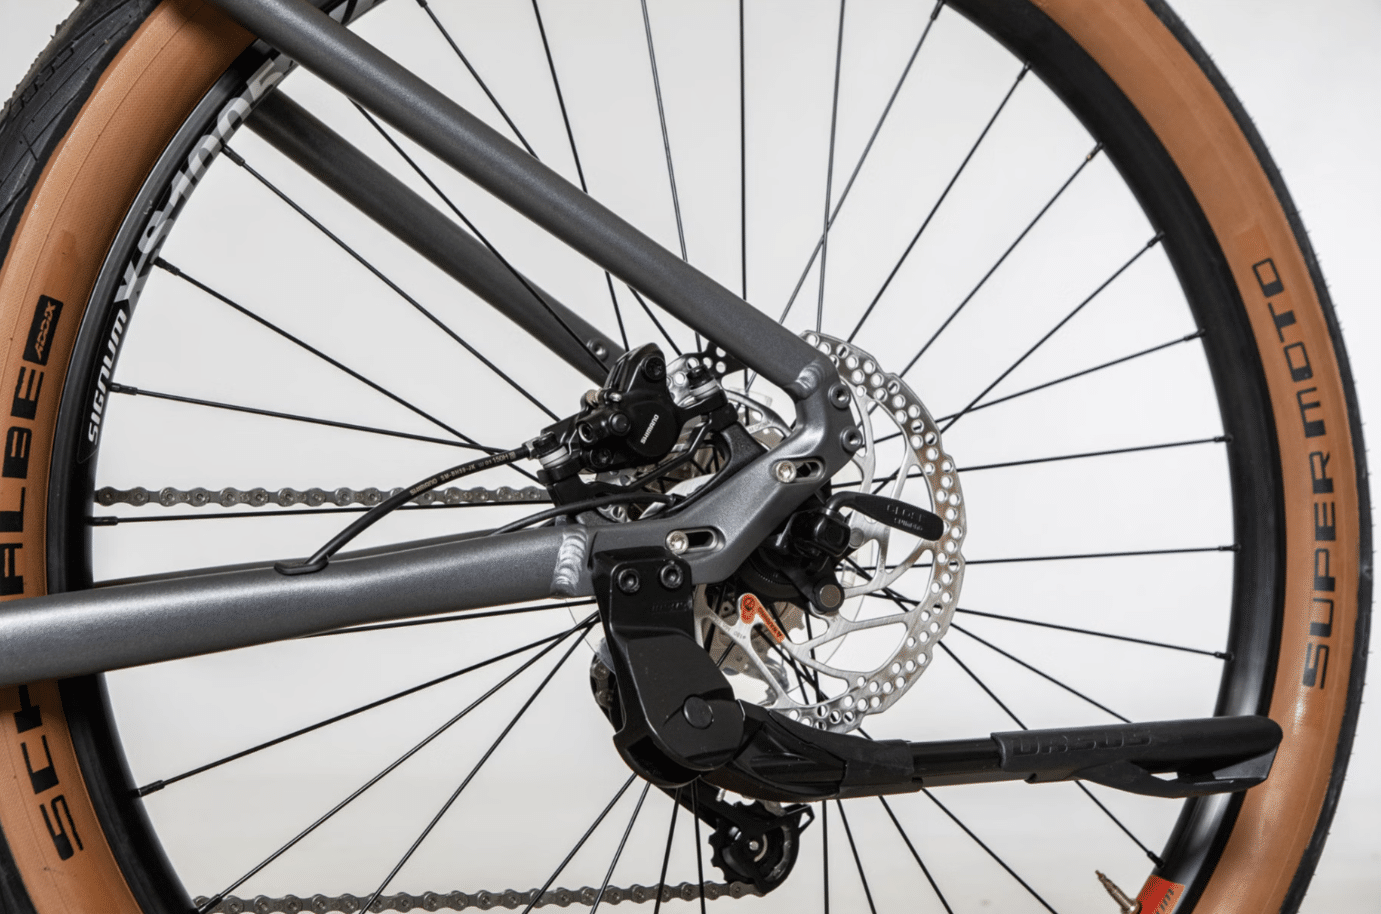 Freins à disque hydrauliques Shimano BR-MT200 du Bicyklet Gabriel